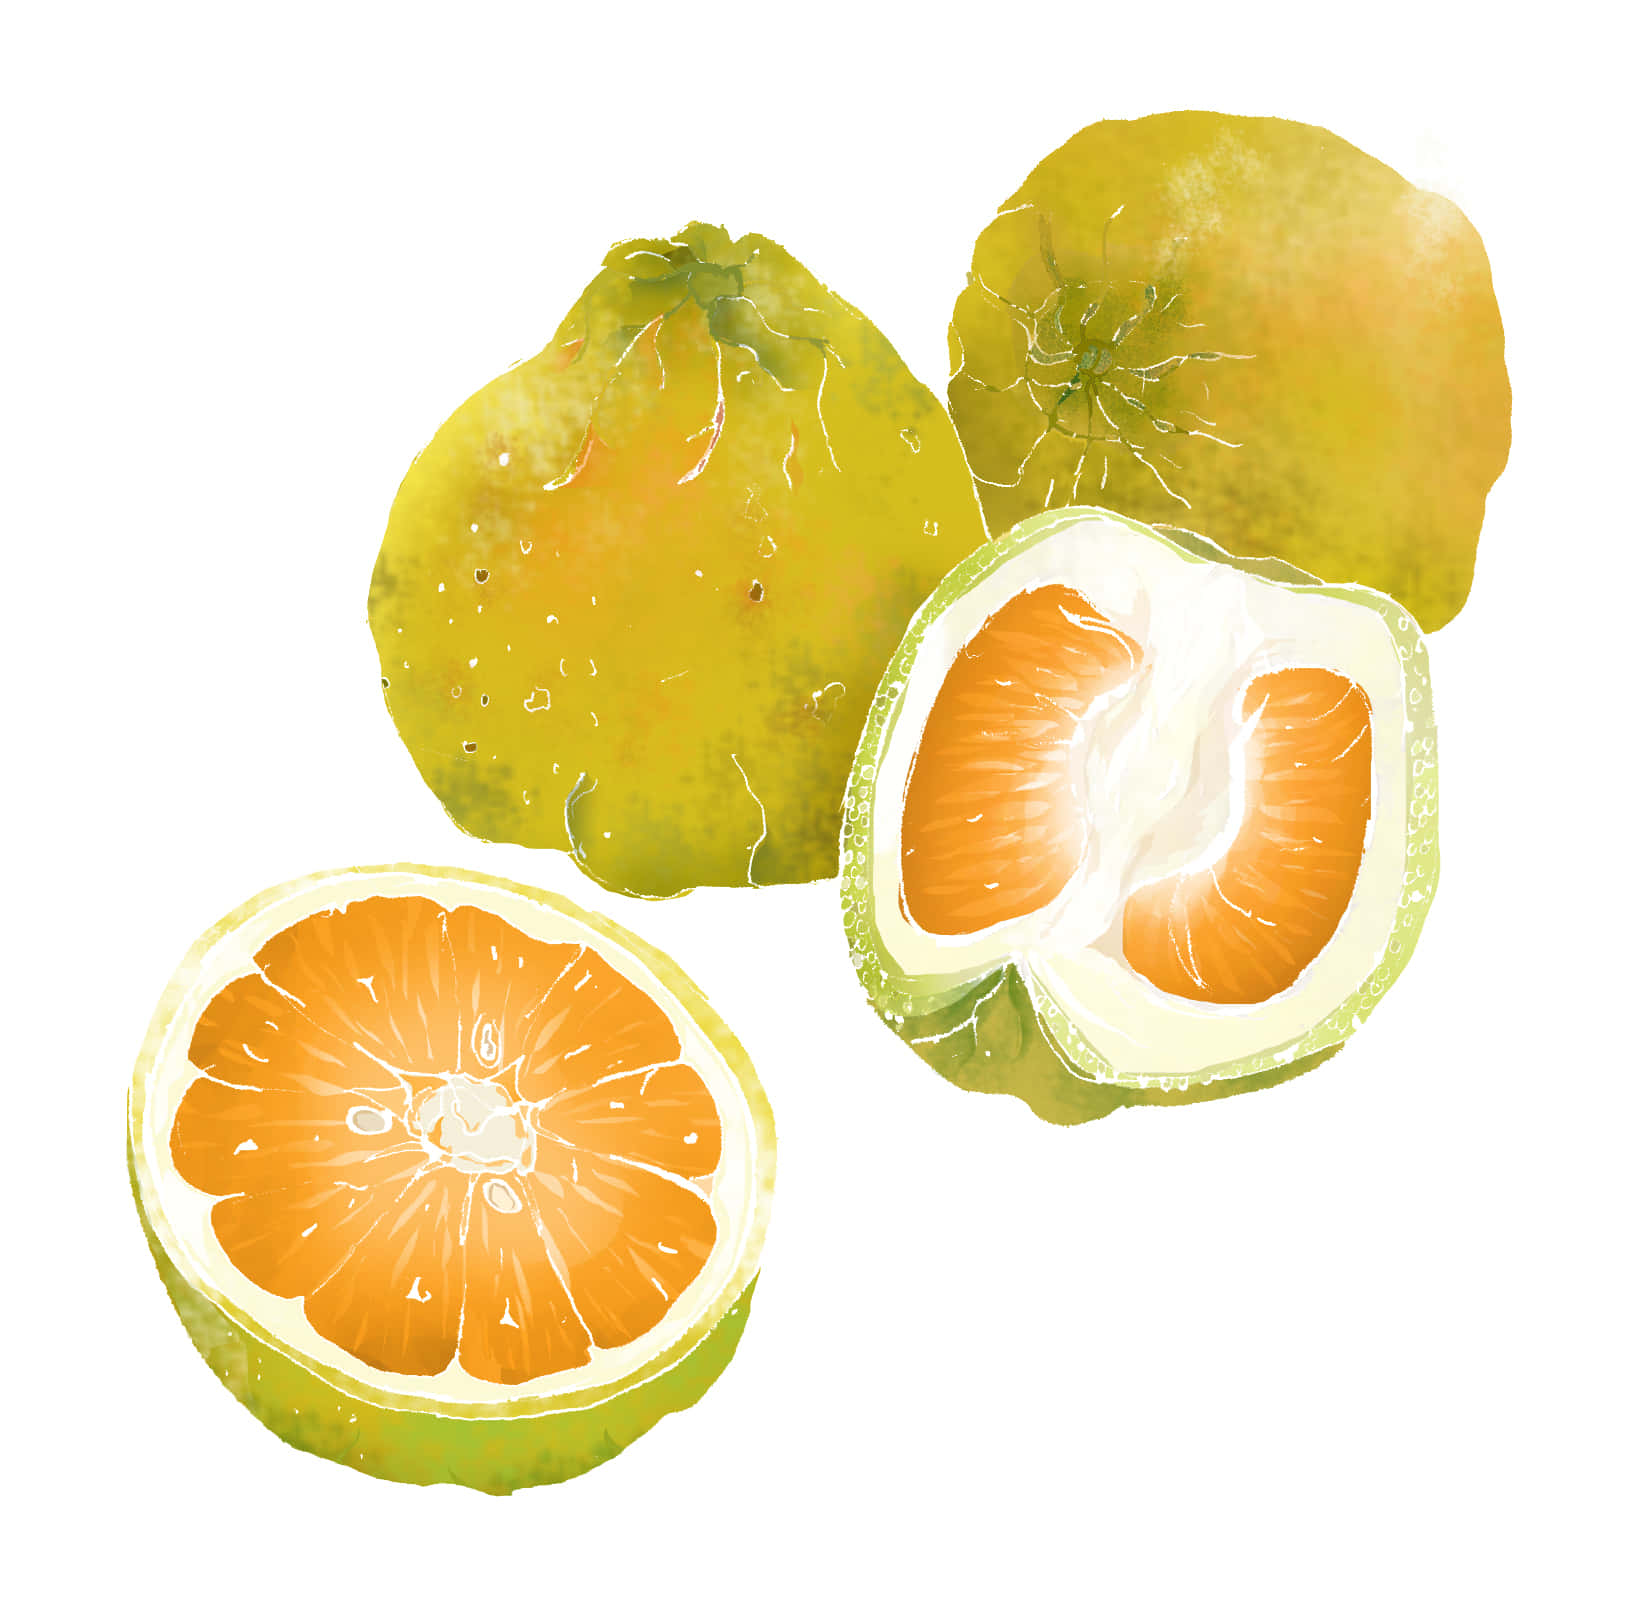 Ugli Citrus Fruits Digital Art Wallpaper